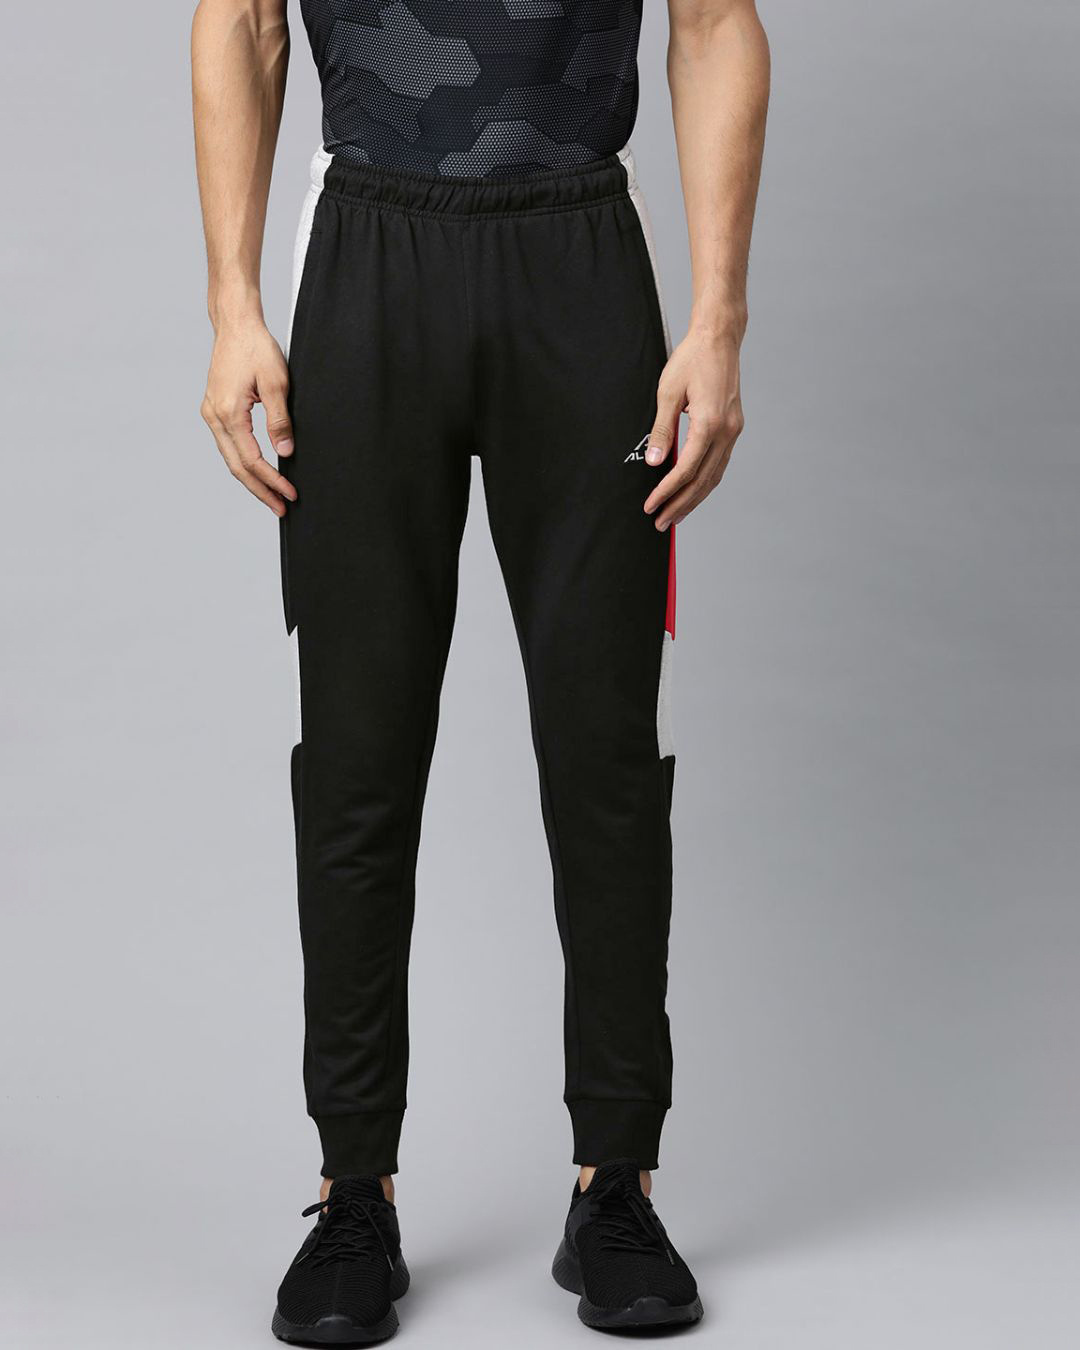 Buy Men's Black Solid Slim Fit Joggers Online at Bewakoof